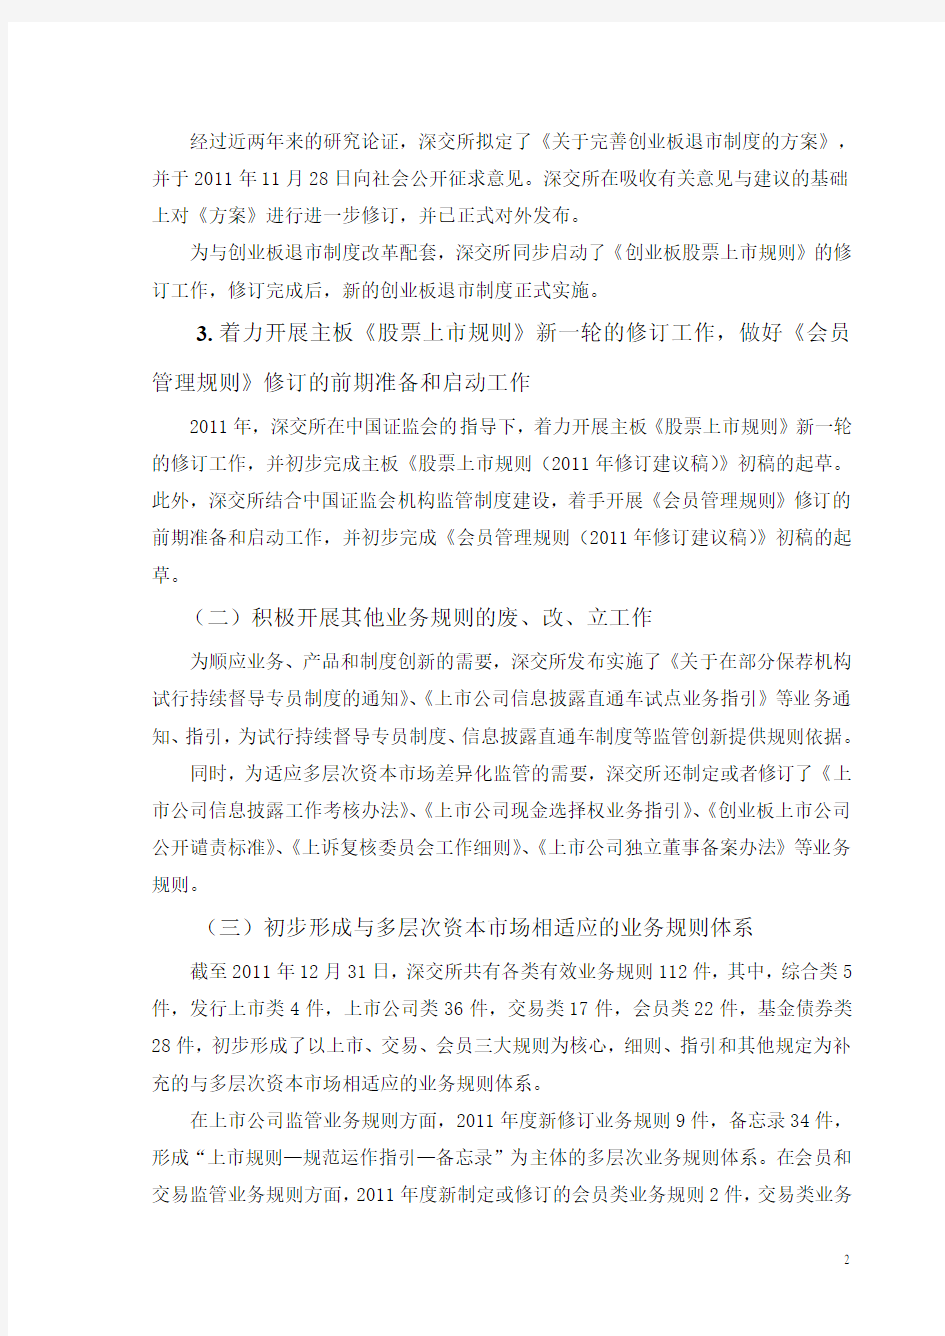 深圳证券交易所2011年度自律监管工作报告